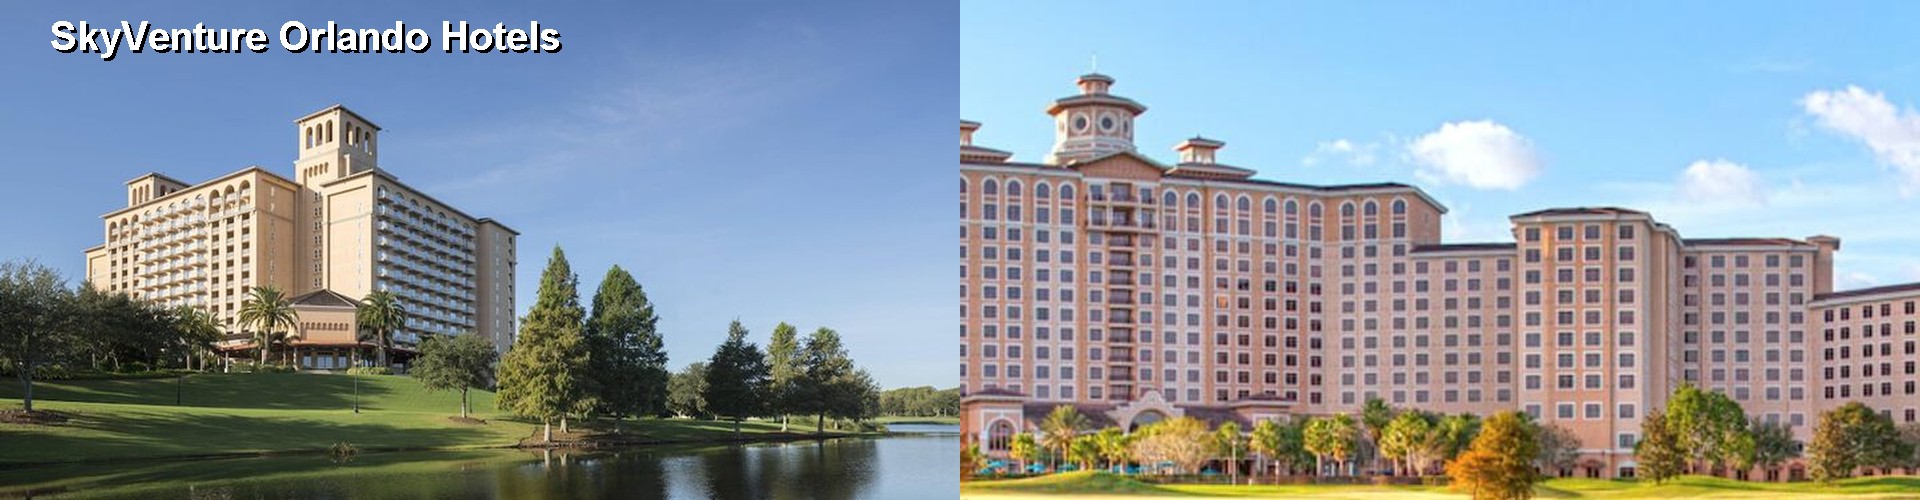 5 Best Hotels near SkyVenture Orlando